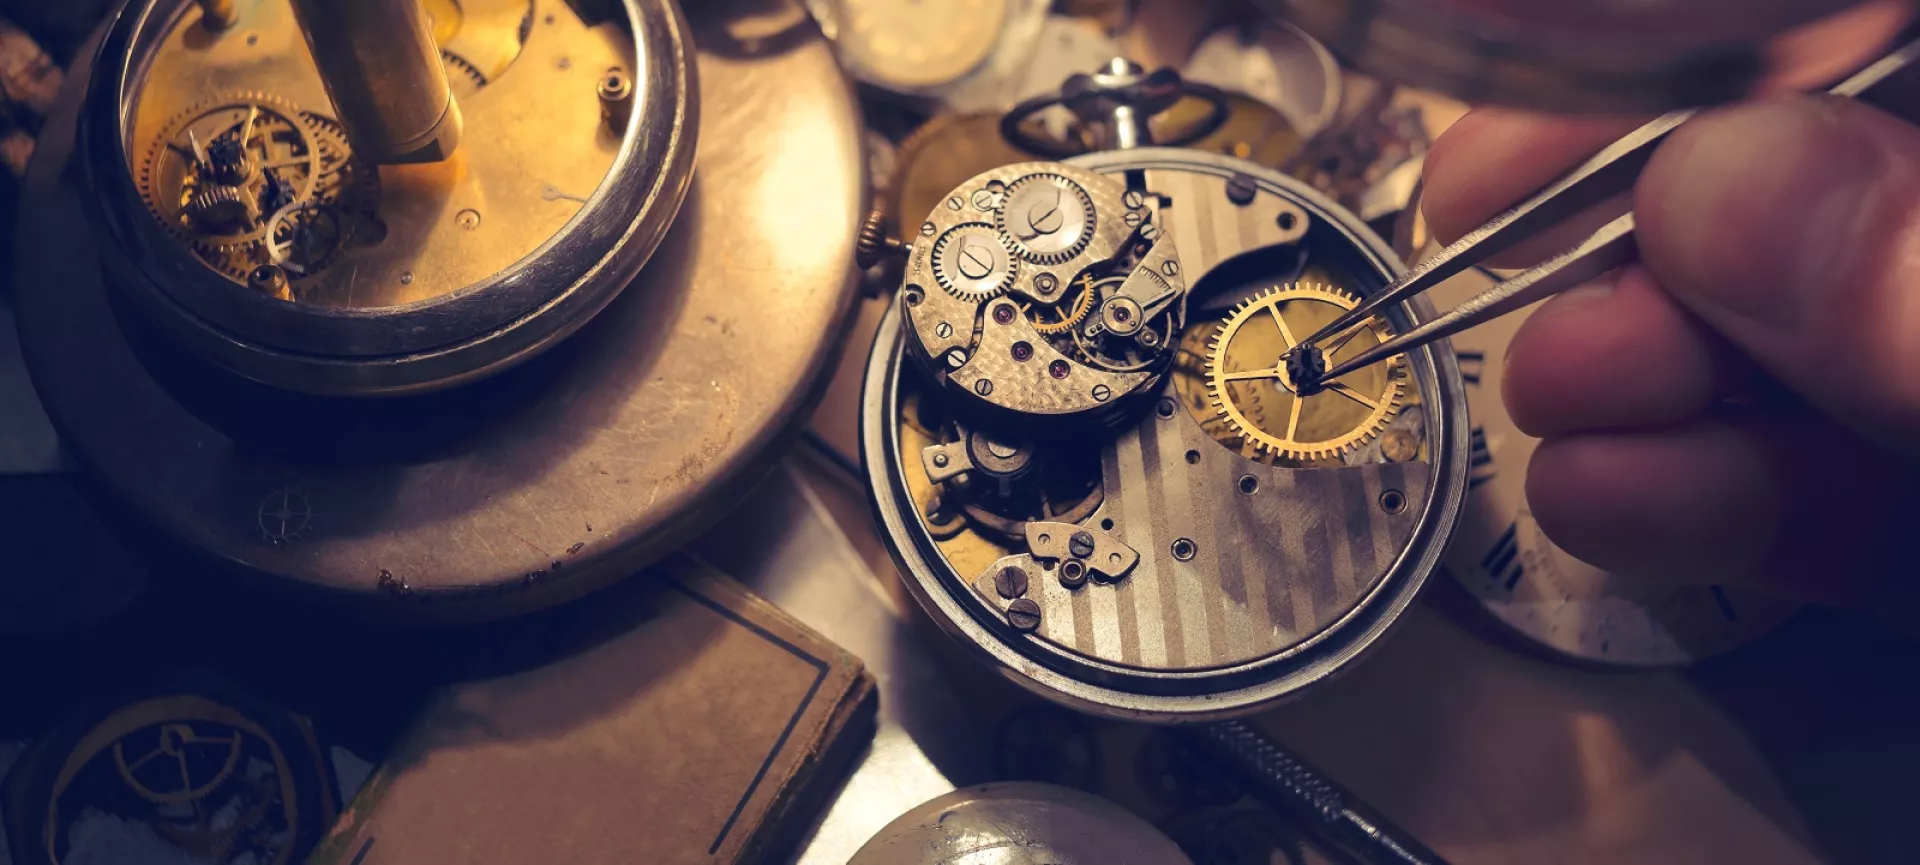 Ticktack und TikTok: zur Zukunft des Uhrmacher-Handwerks